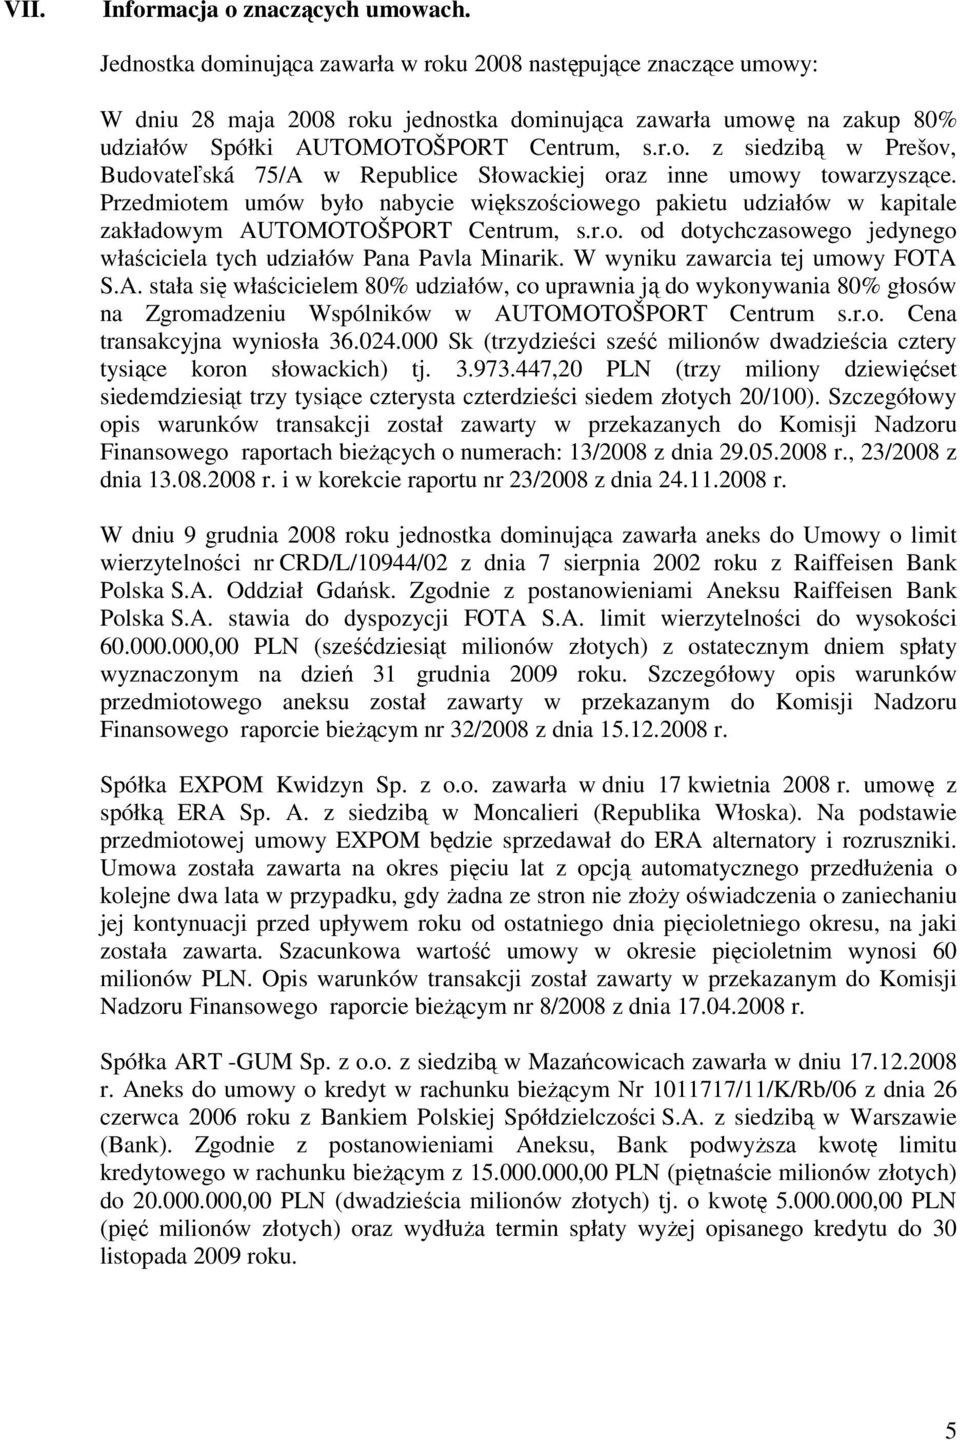 Przedmiotem umów było nabycie większościowego pakietu udziałów w kapitale zakładowym AUTOMOTOŠPORT Centrum, s.r.o. od dotychczasowego jedynego właściciela tych udziałów Pana Pavla Minarik.